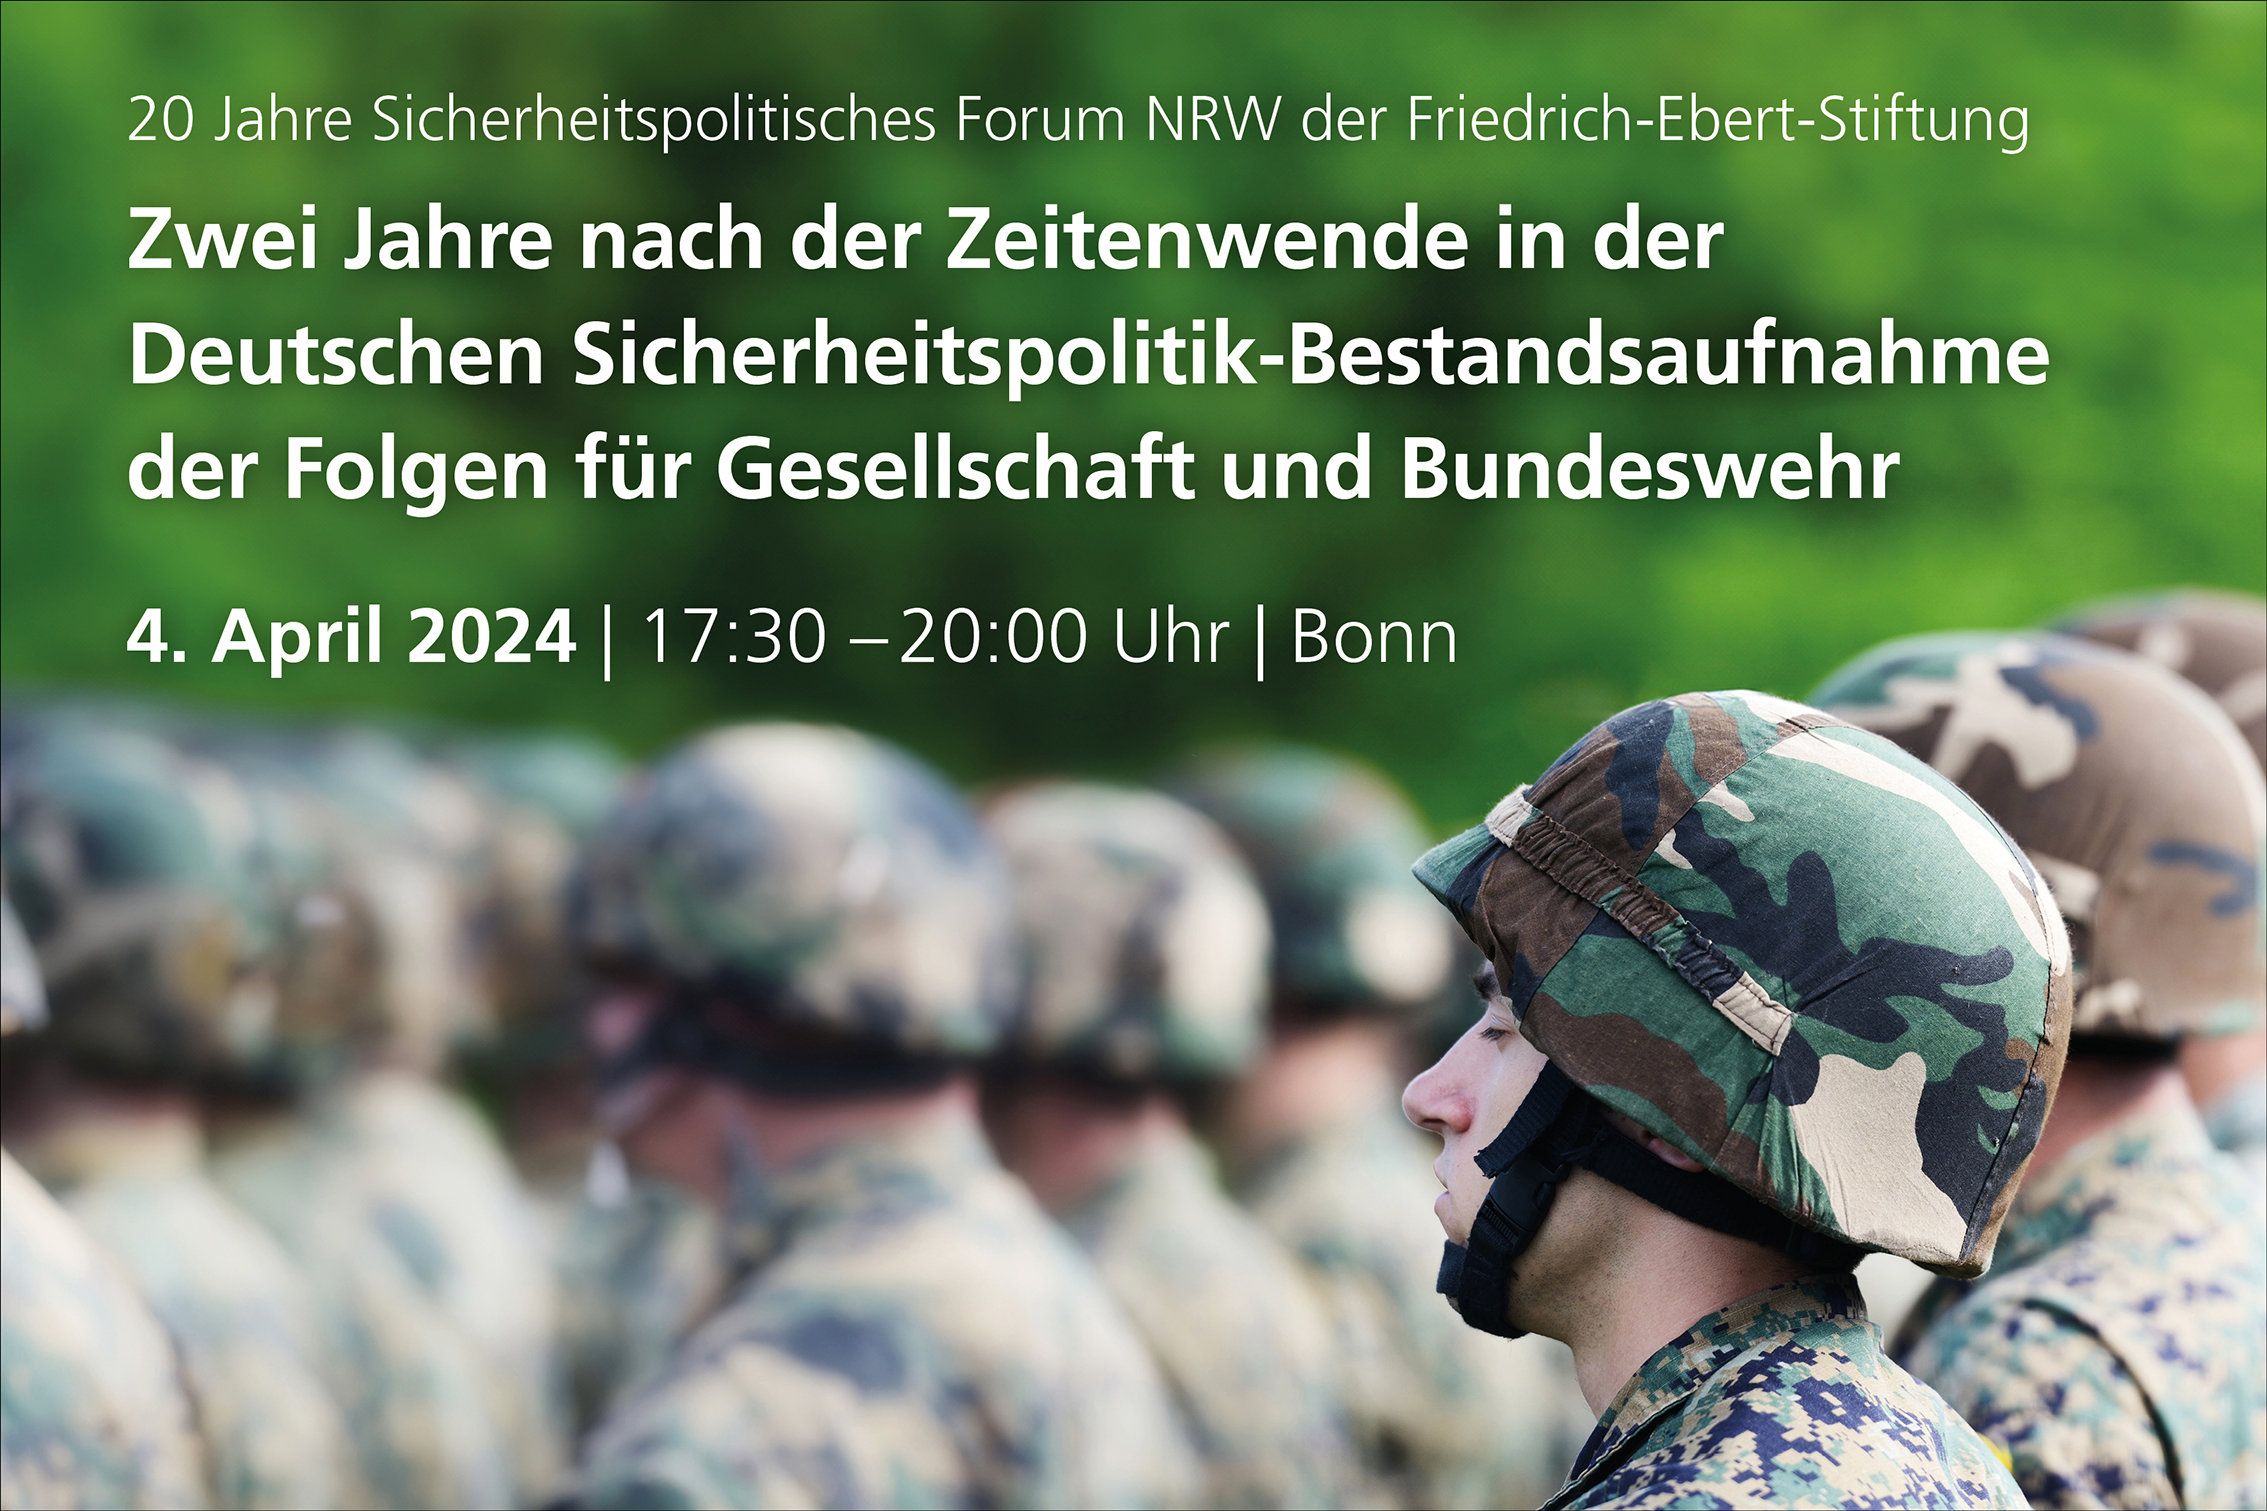 Zwei Jahre nach der Zeitenwende in der Deutschen Sicherheitspolitik-Bestandsaufnahme der Folgen für Gesellschaft und Bundeswehr